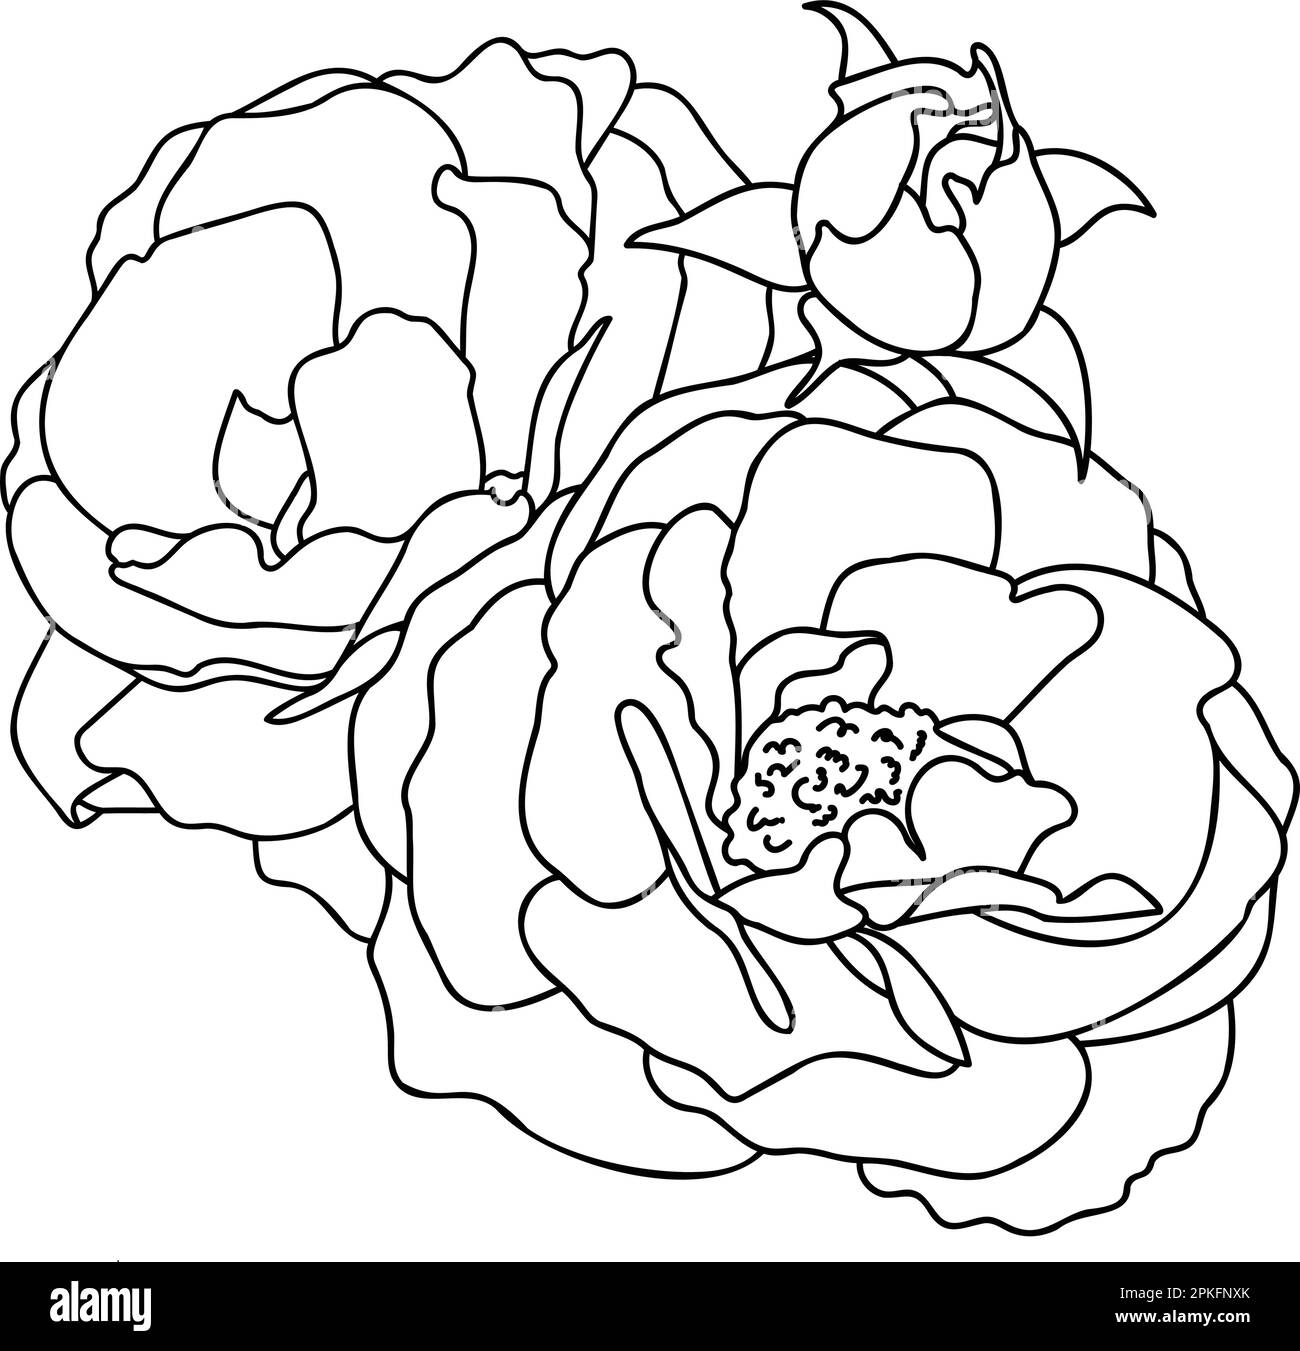 Illustration représentant une rose dessinée à la main dans un vecteur. Esquisses, dessin au trait Illustration de Vecteur